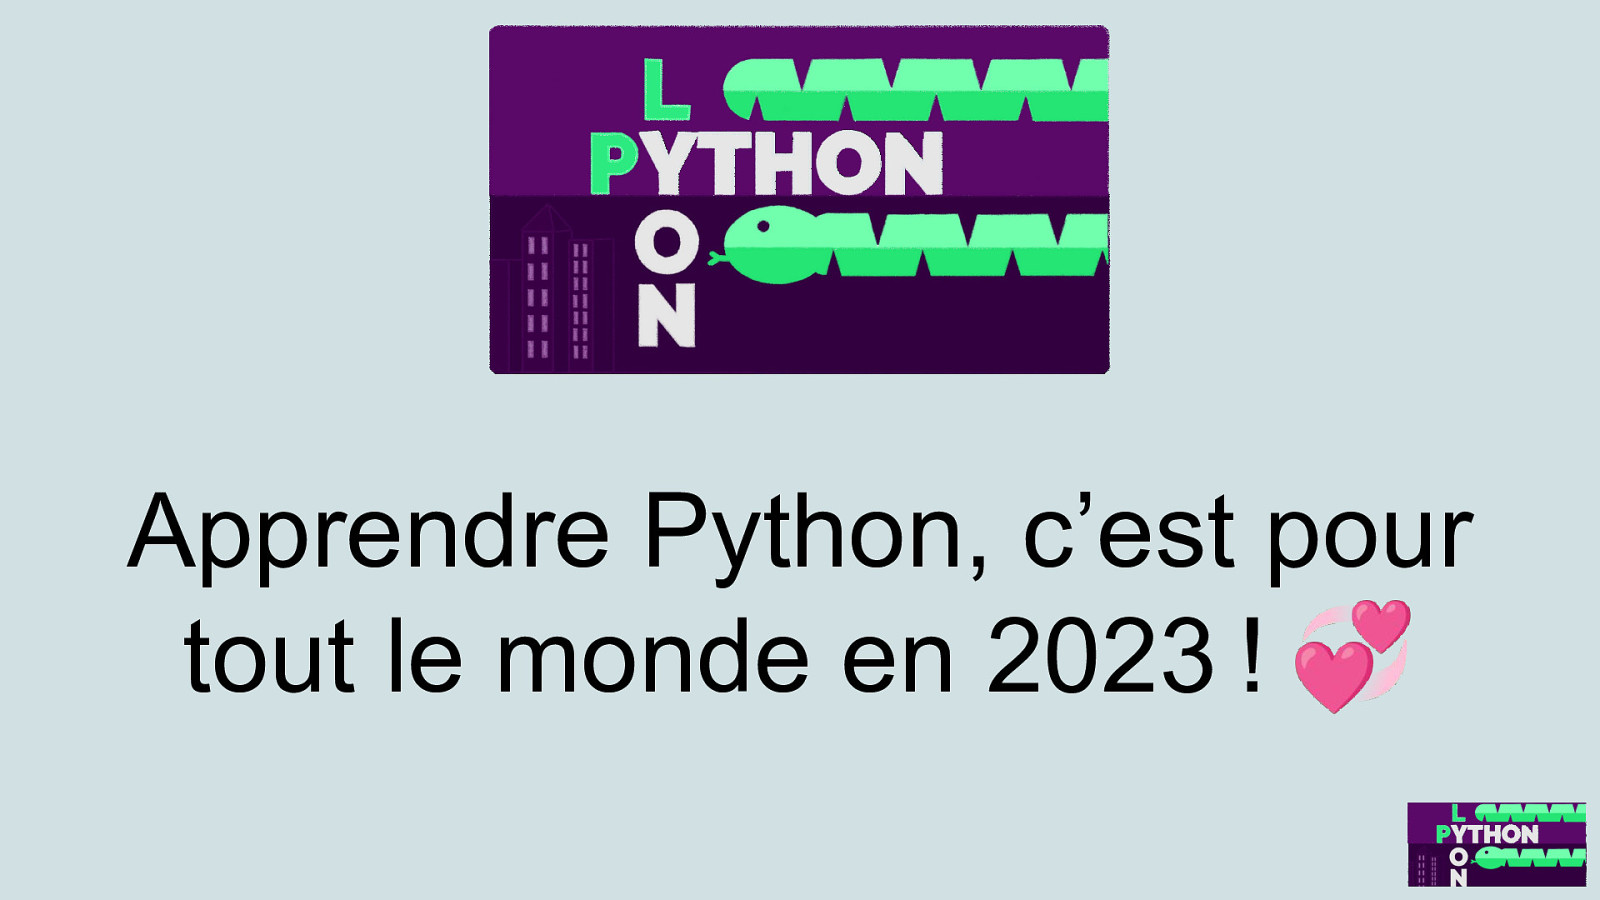 Apprendre Python, c’est pour tout le monde en 2023 ! 💞